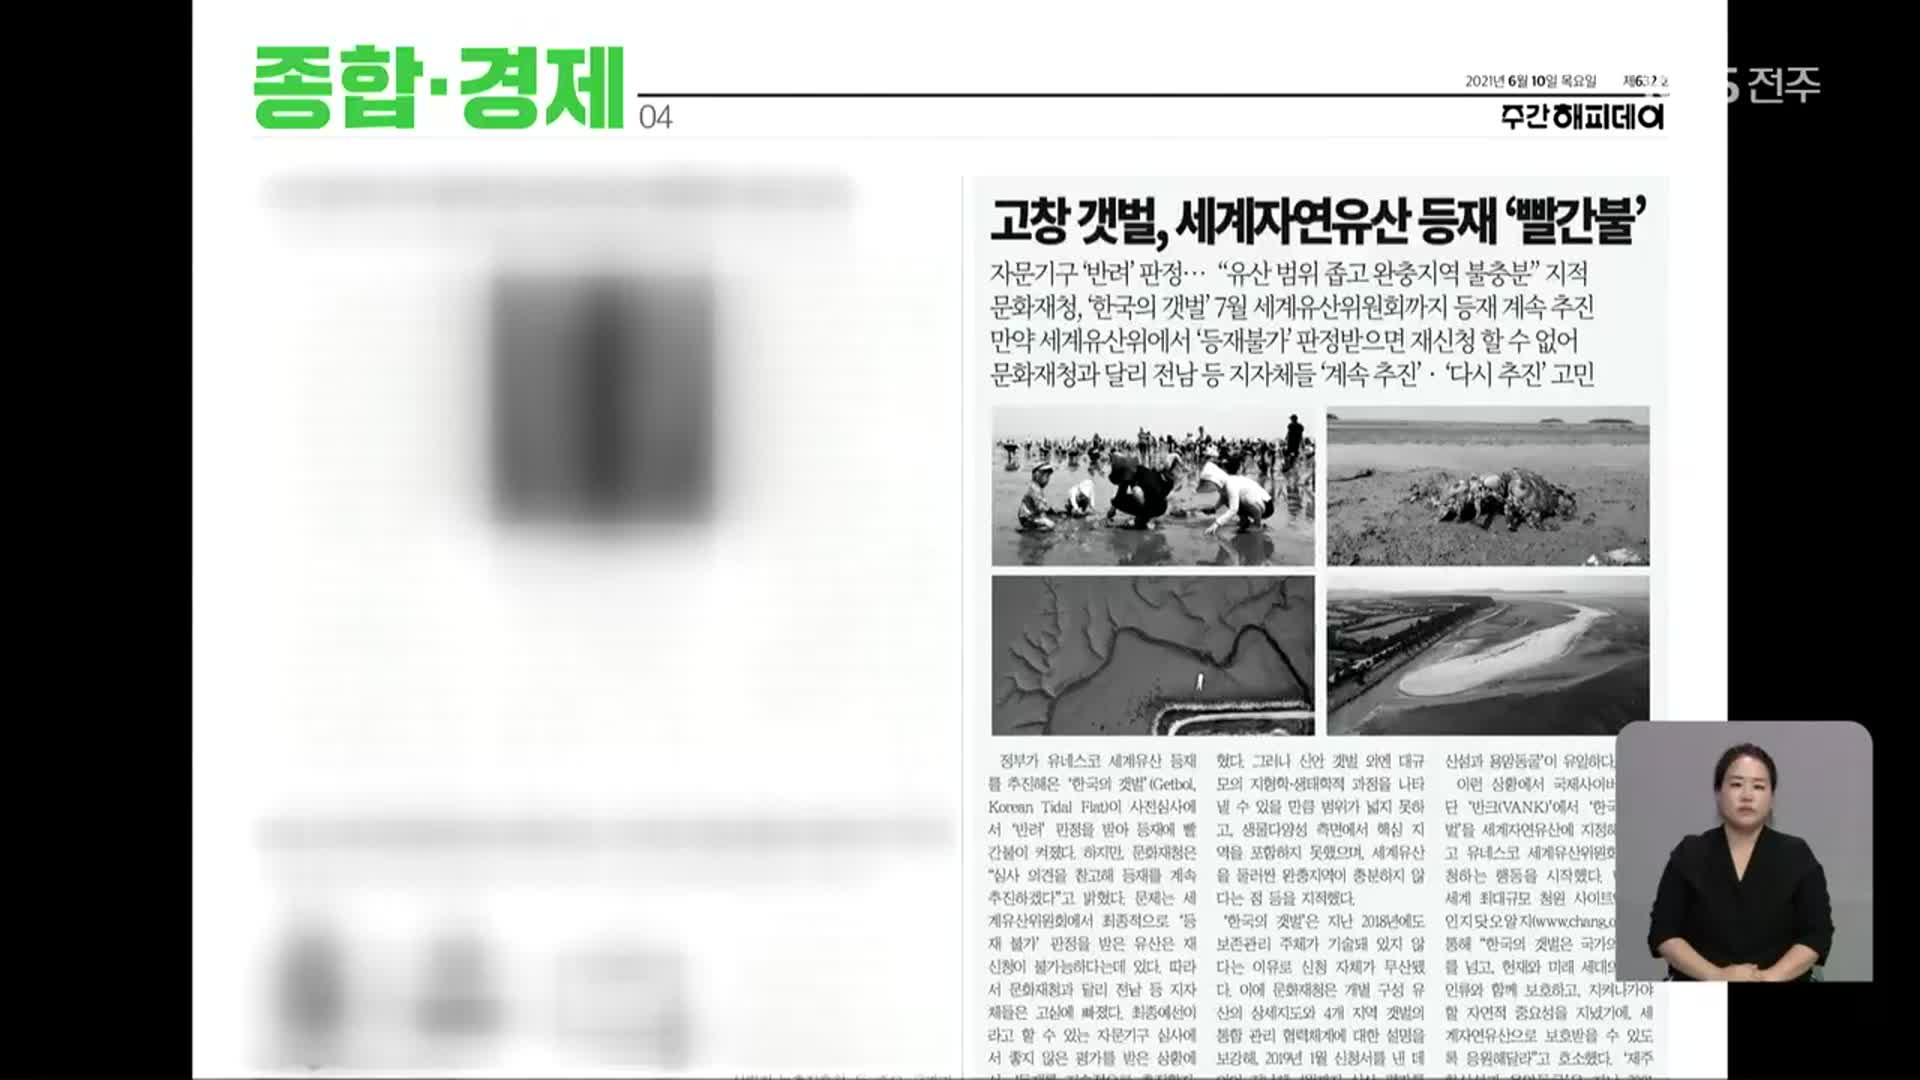 [풀뿌리K] 세계자연유산 자문·심사기구, ‘한국의 갯벌’ 반려 권고